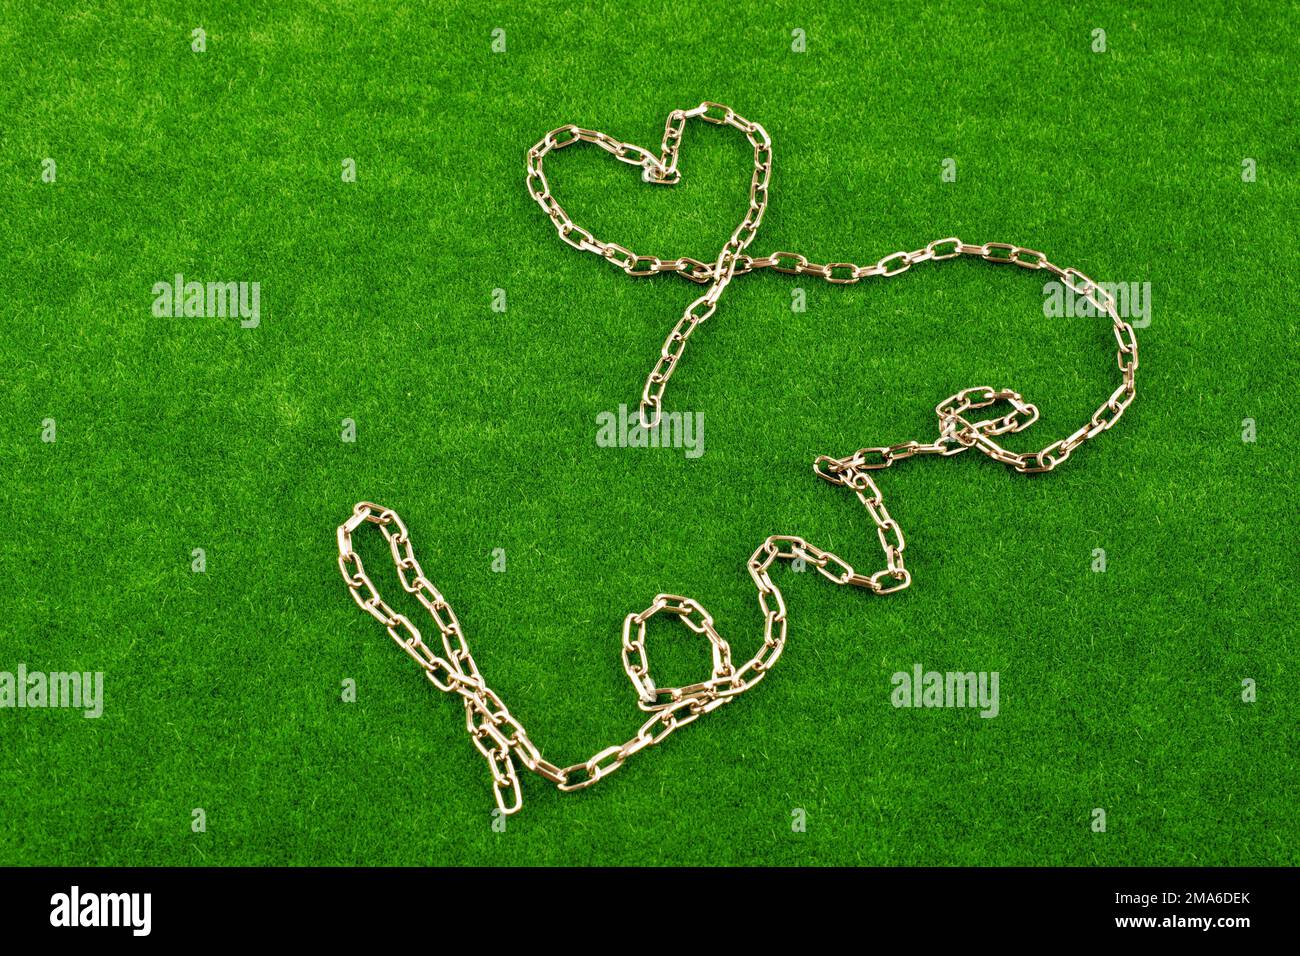 Kette schreibt das Wort Liebe auf dem grünen Rasen Stockfoto